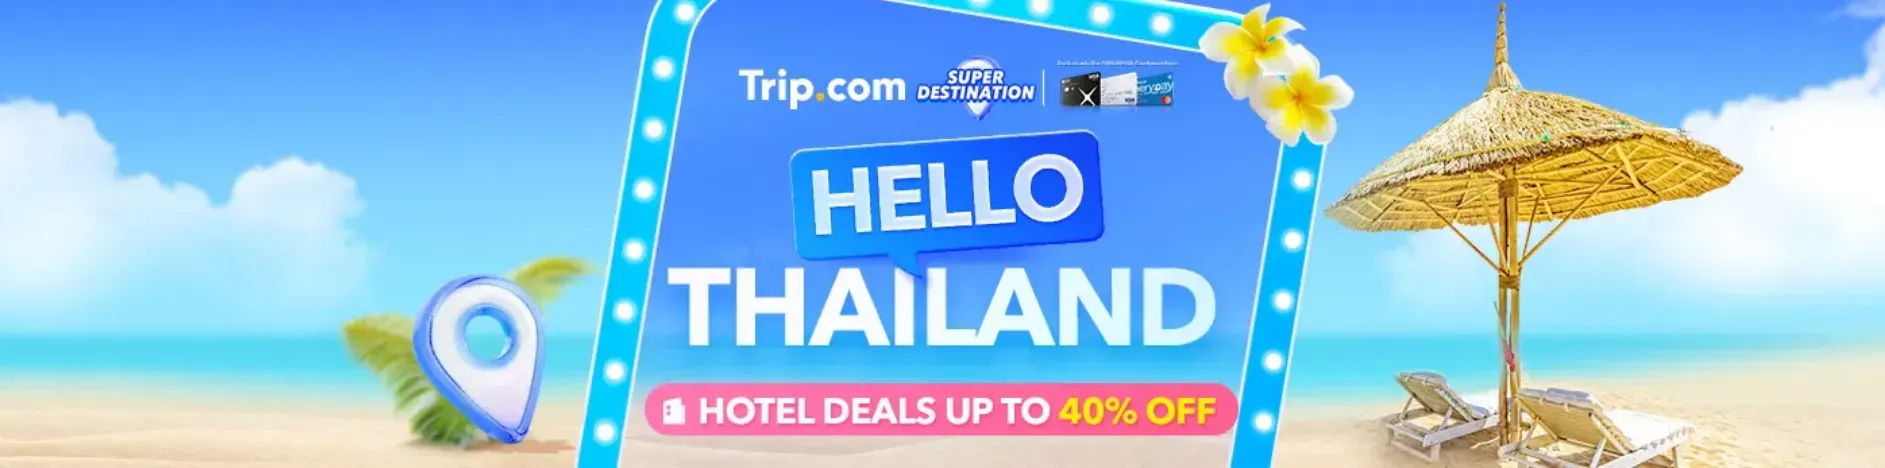 Trip.com Promo Code Singapore: Super Destination, Thailand